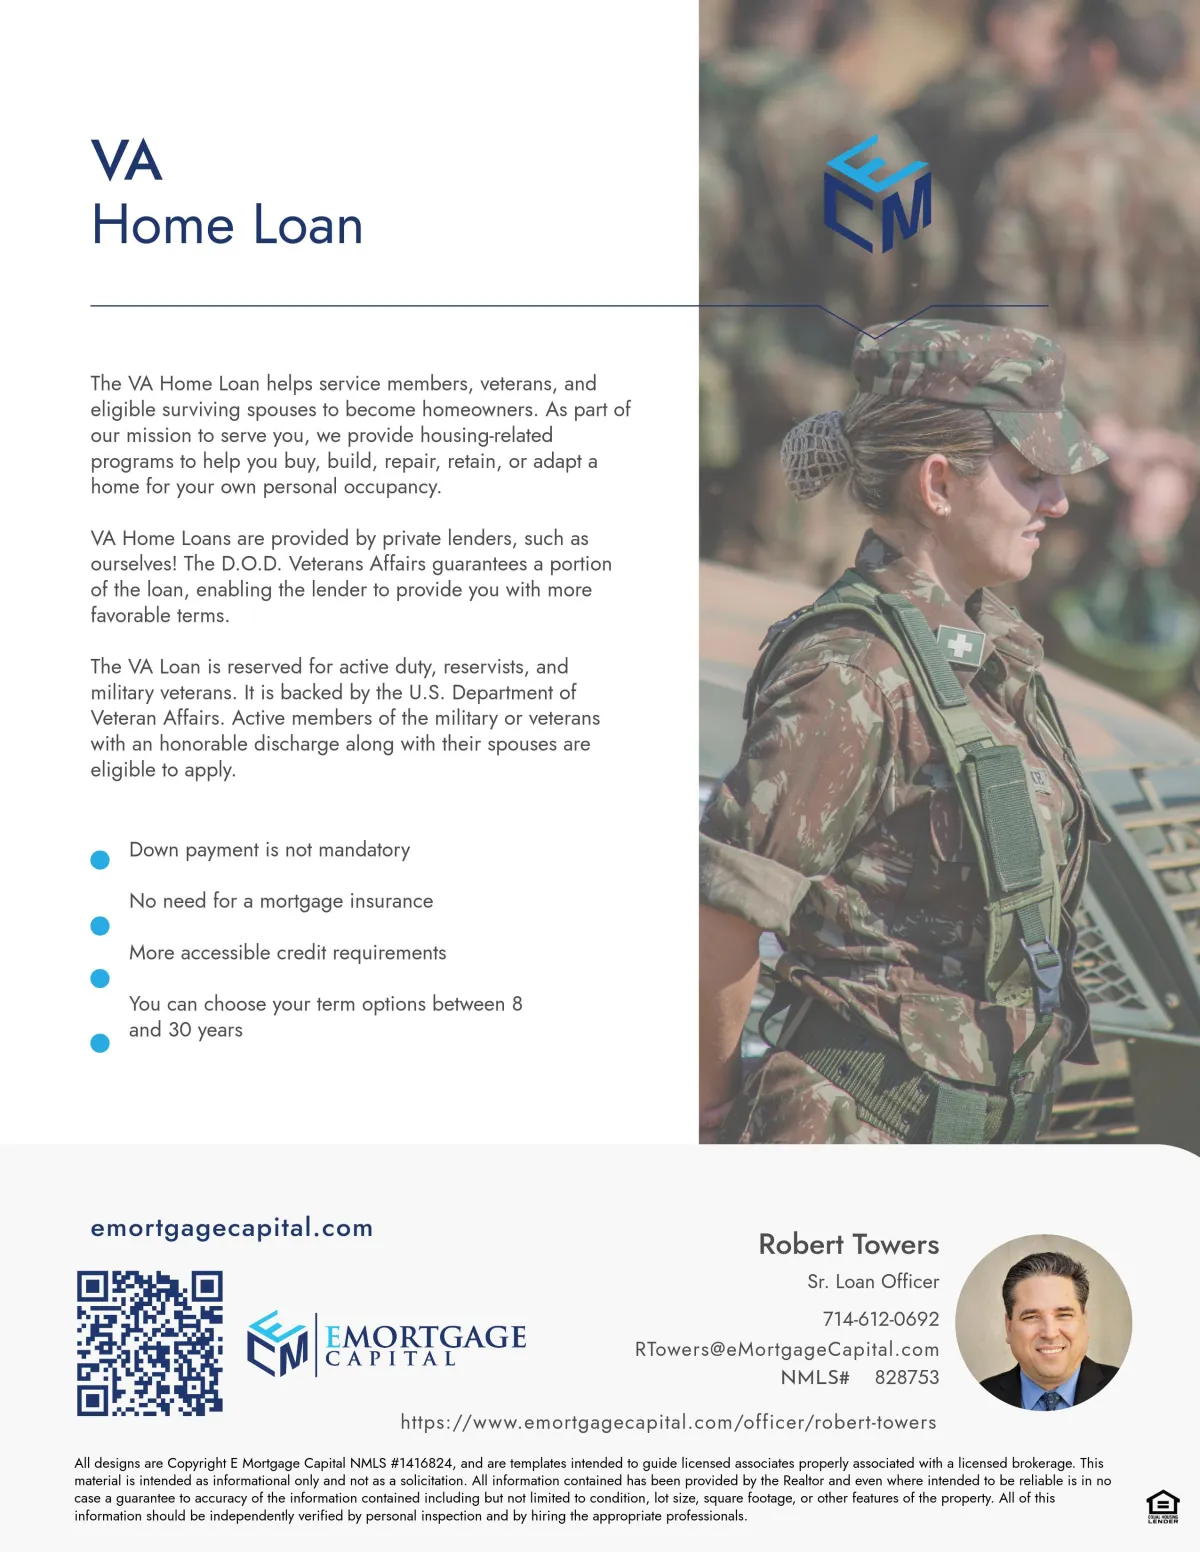 Robert Towers | VA Loans